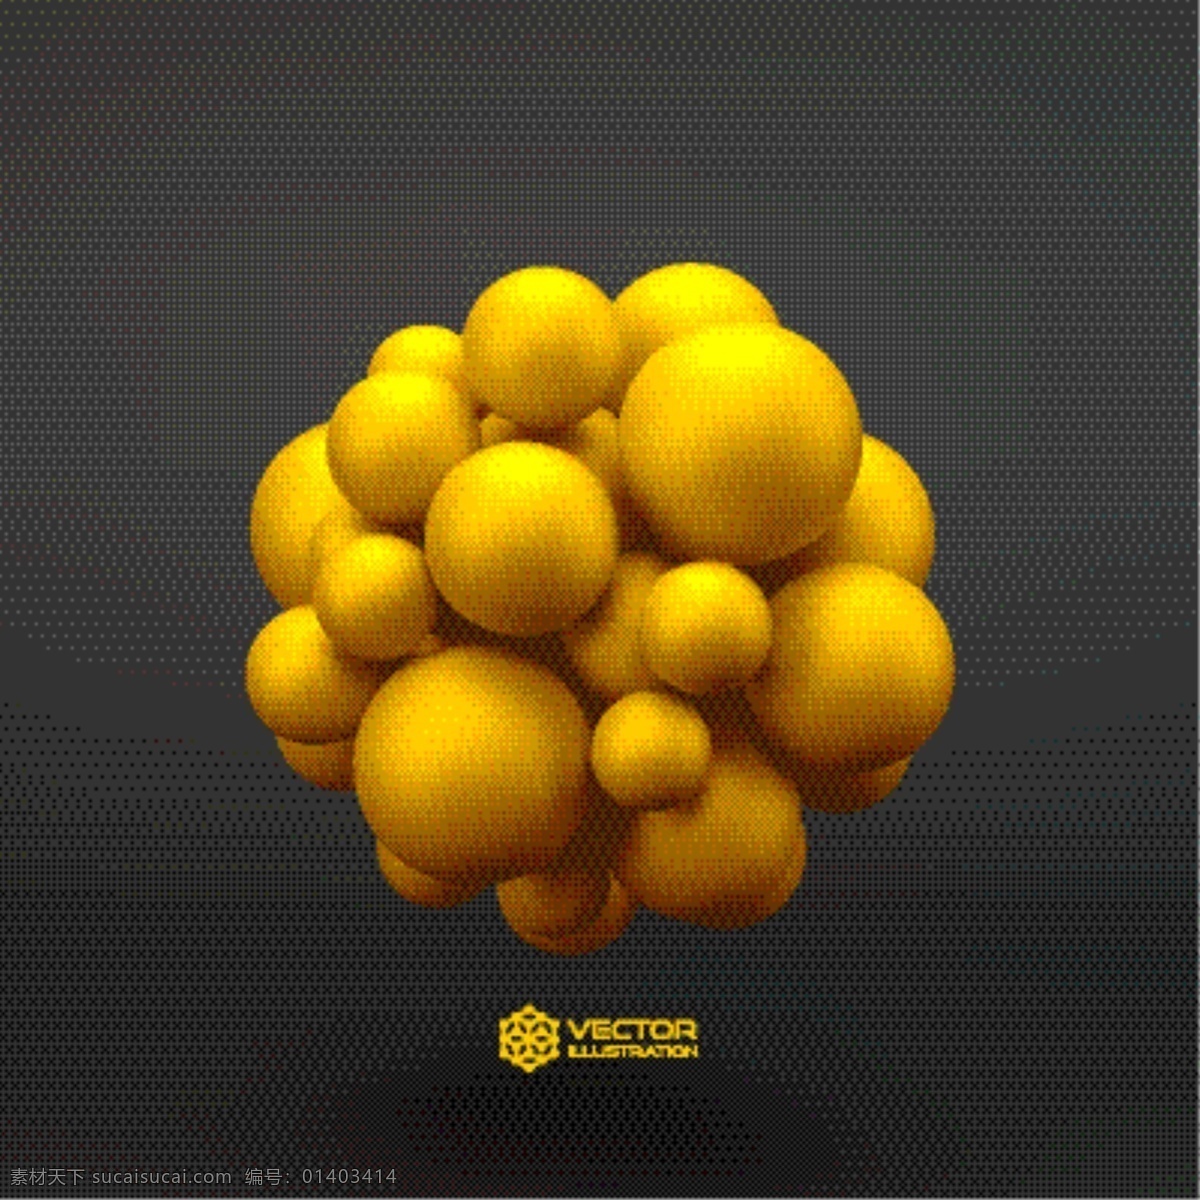 黄色 三维 分子 球 背景 球体 矢量图 分子球 其他矢量图